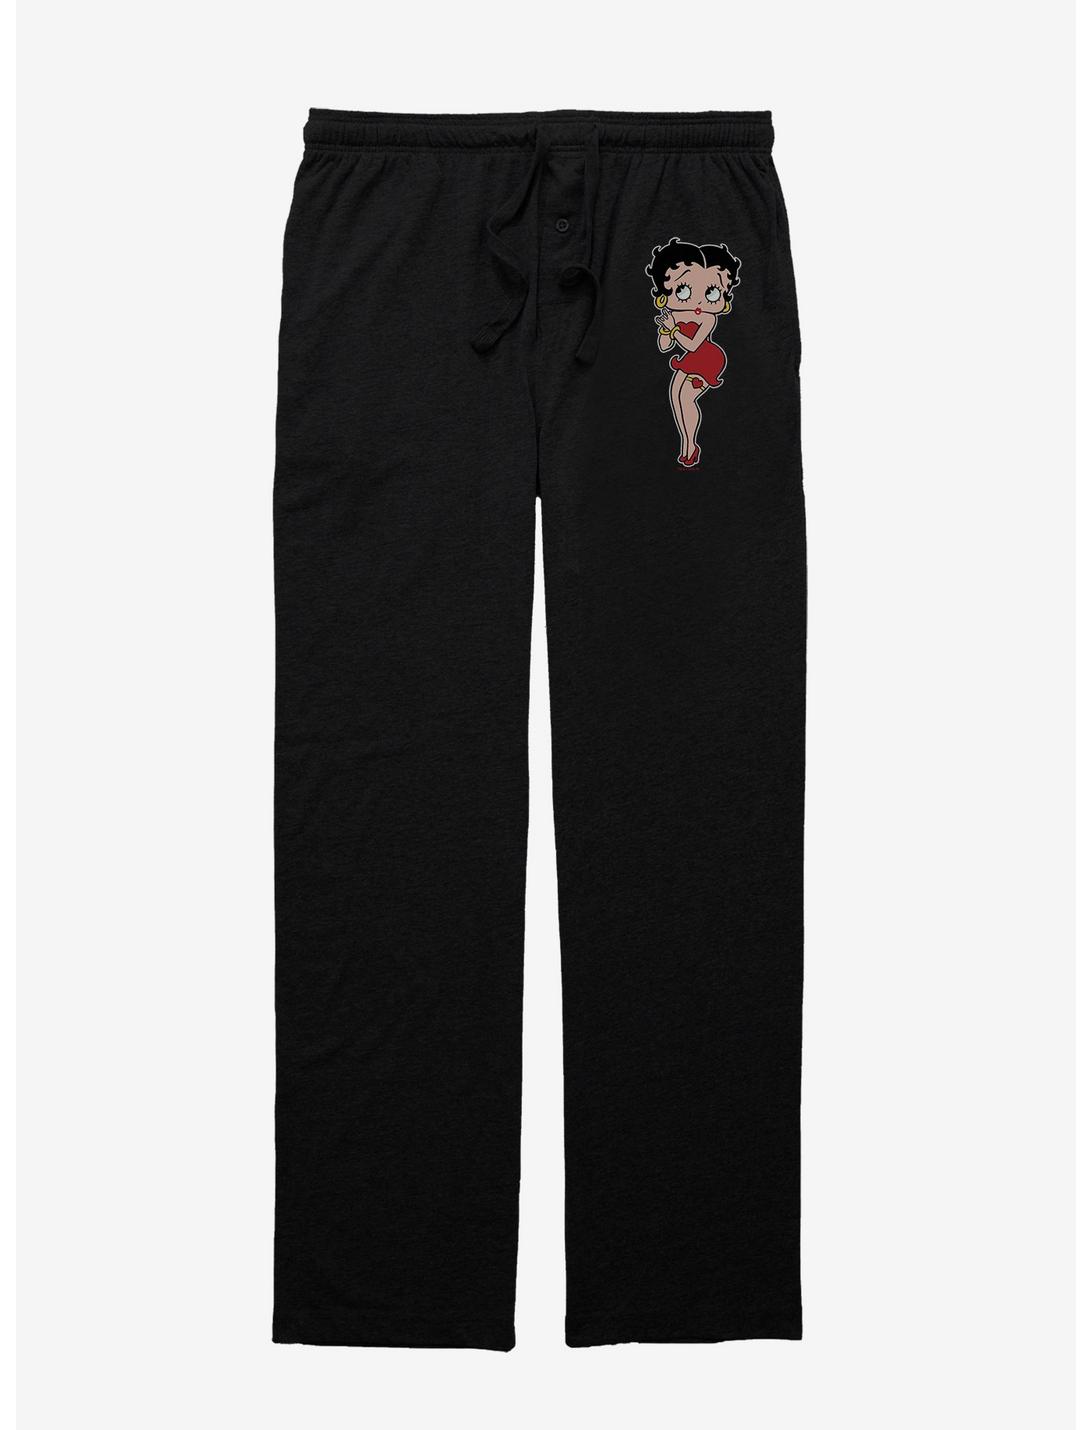 Betty Boop Pose Pajama Pants, BLACK, hi-res